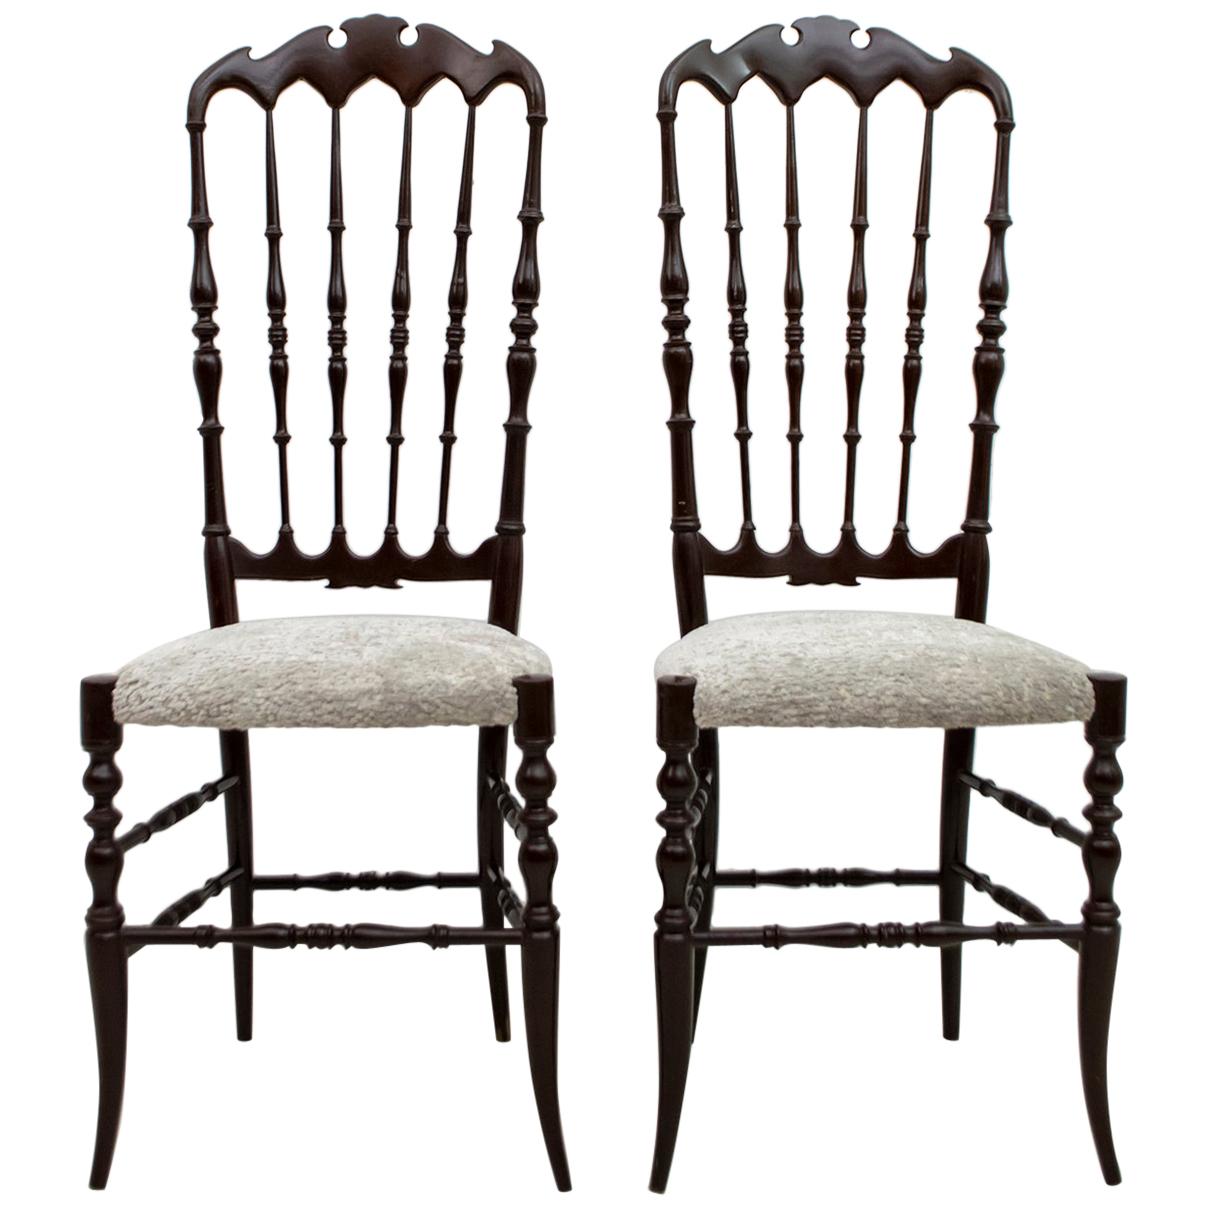 Pair of Gaetano Descalzi Midcentury Italian Chiavari High Back Chairs, 1950s